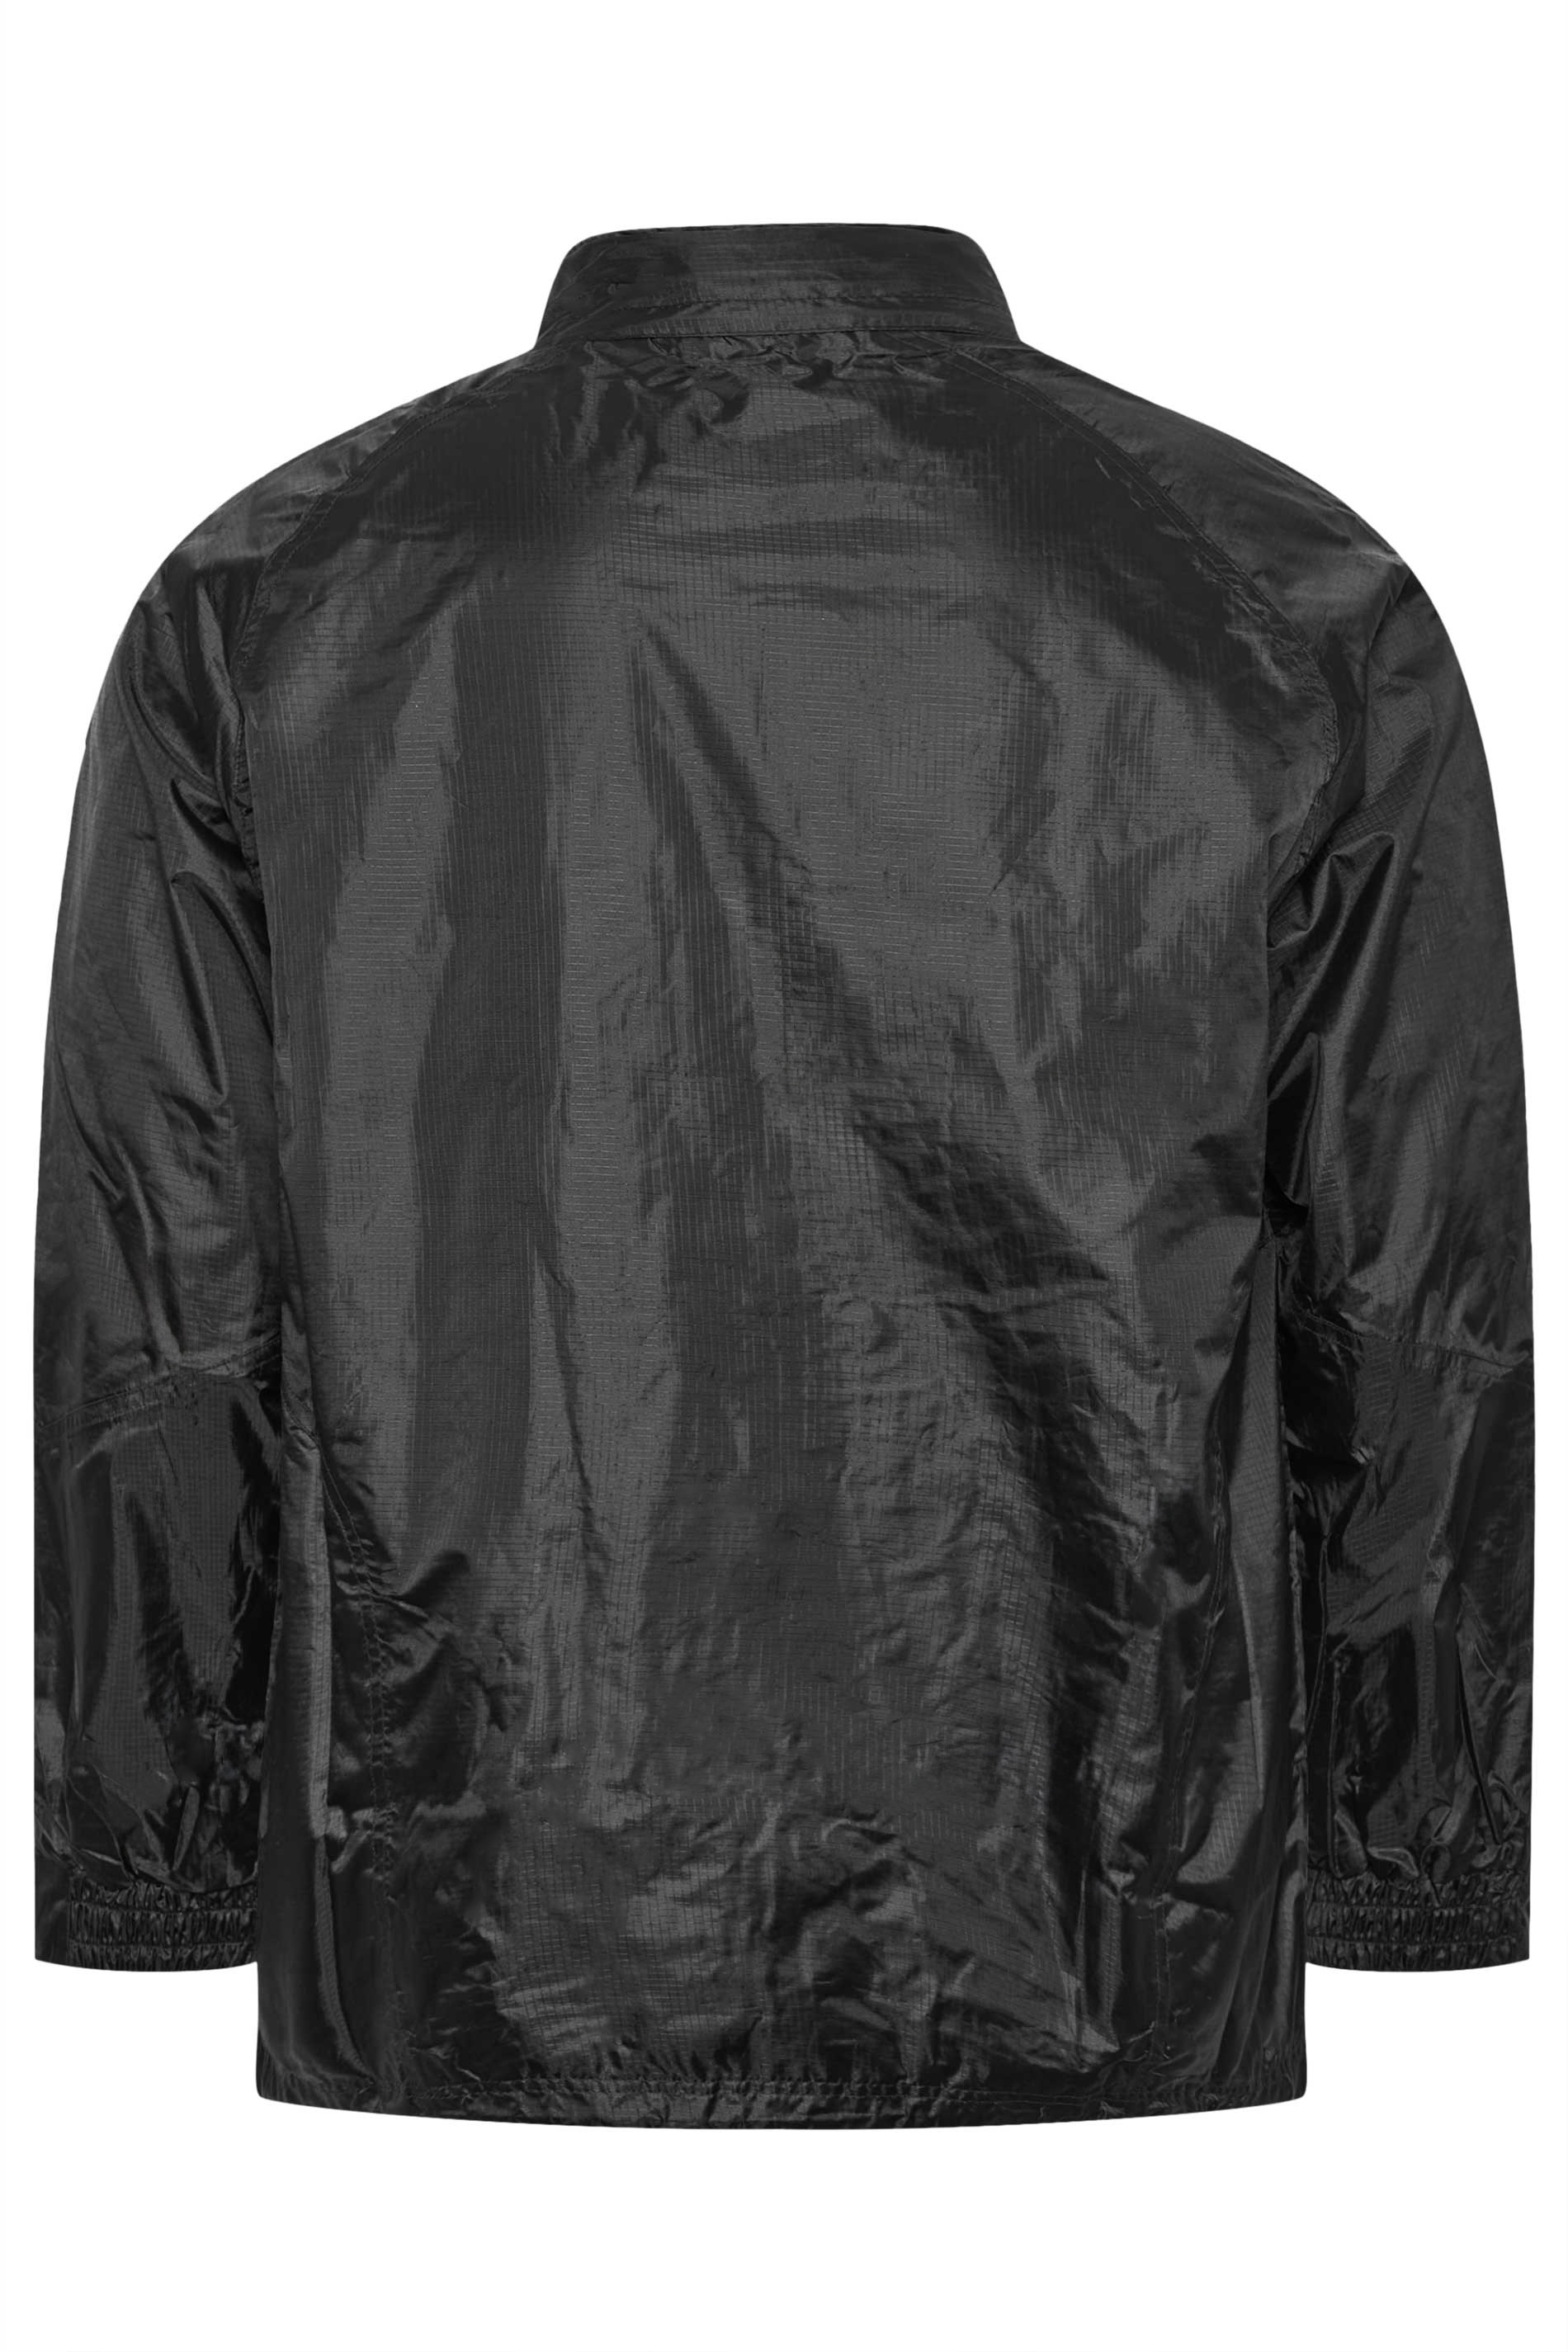 KAM Black Waterproof Jacket | BadRhino 3